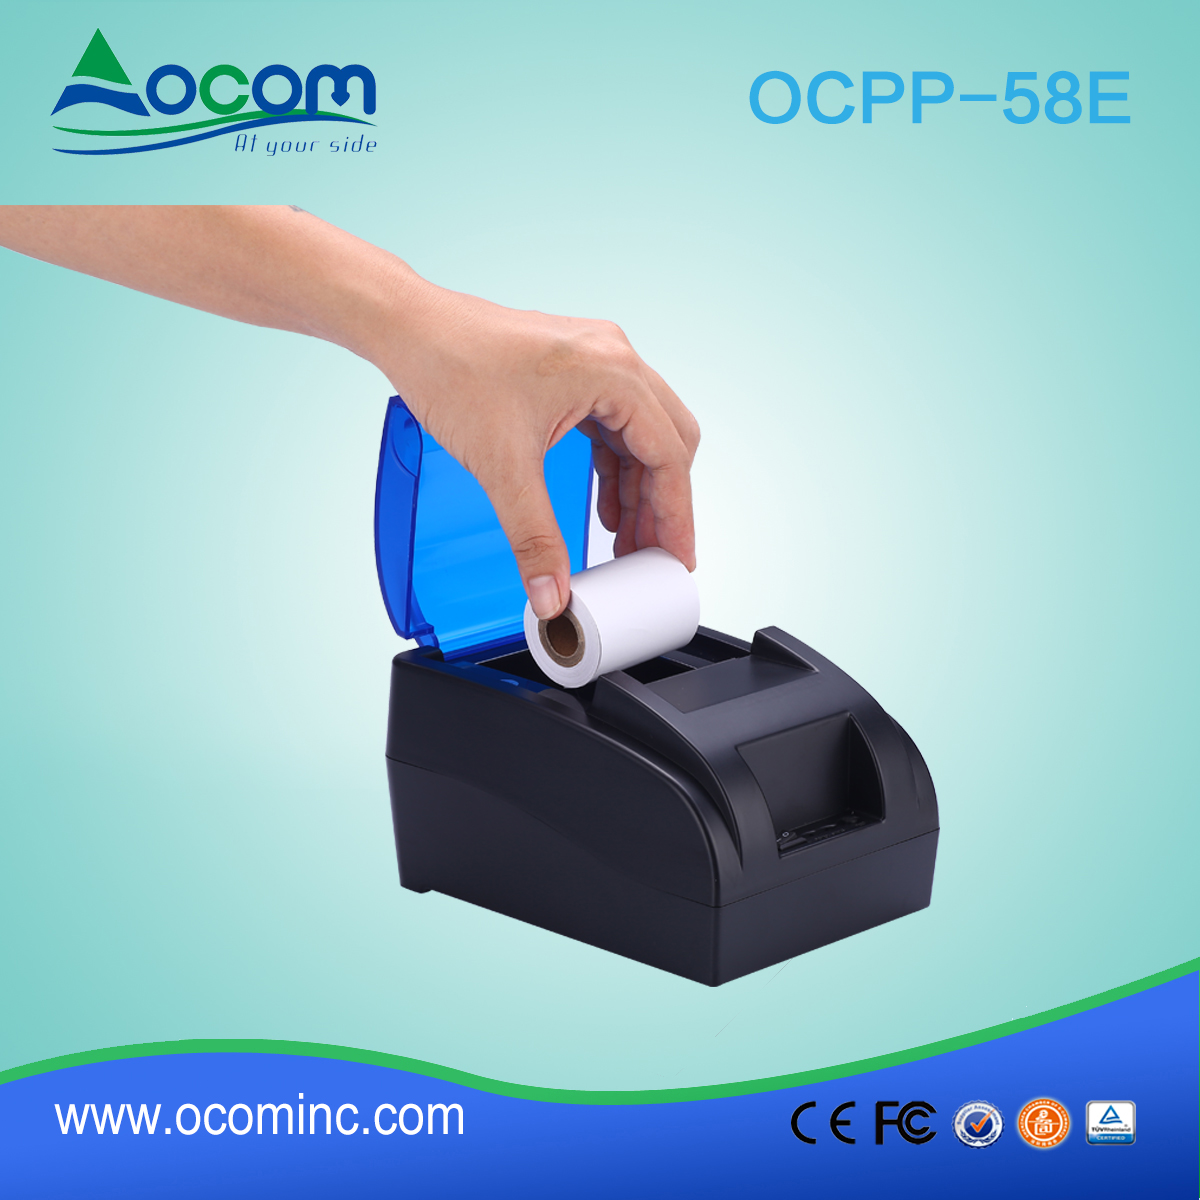 OCPP -58E رخيصة 2 بوصة طباعة الباركود طابعة الإيصالات الحرارية بلوتوث الروبوت